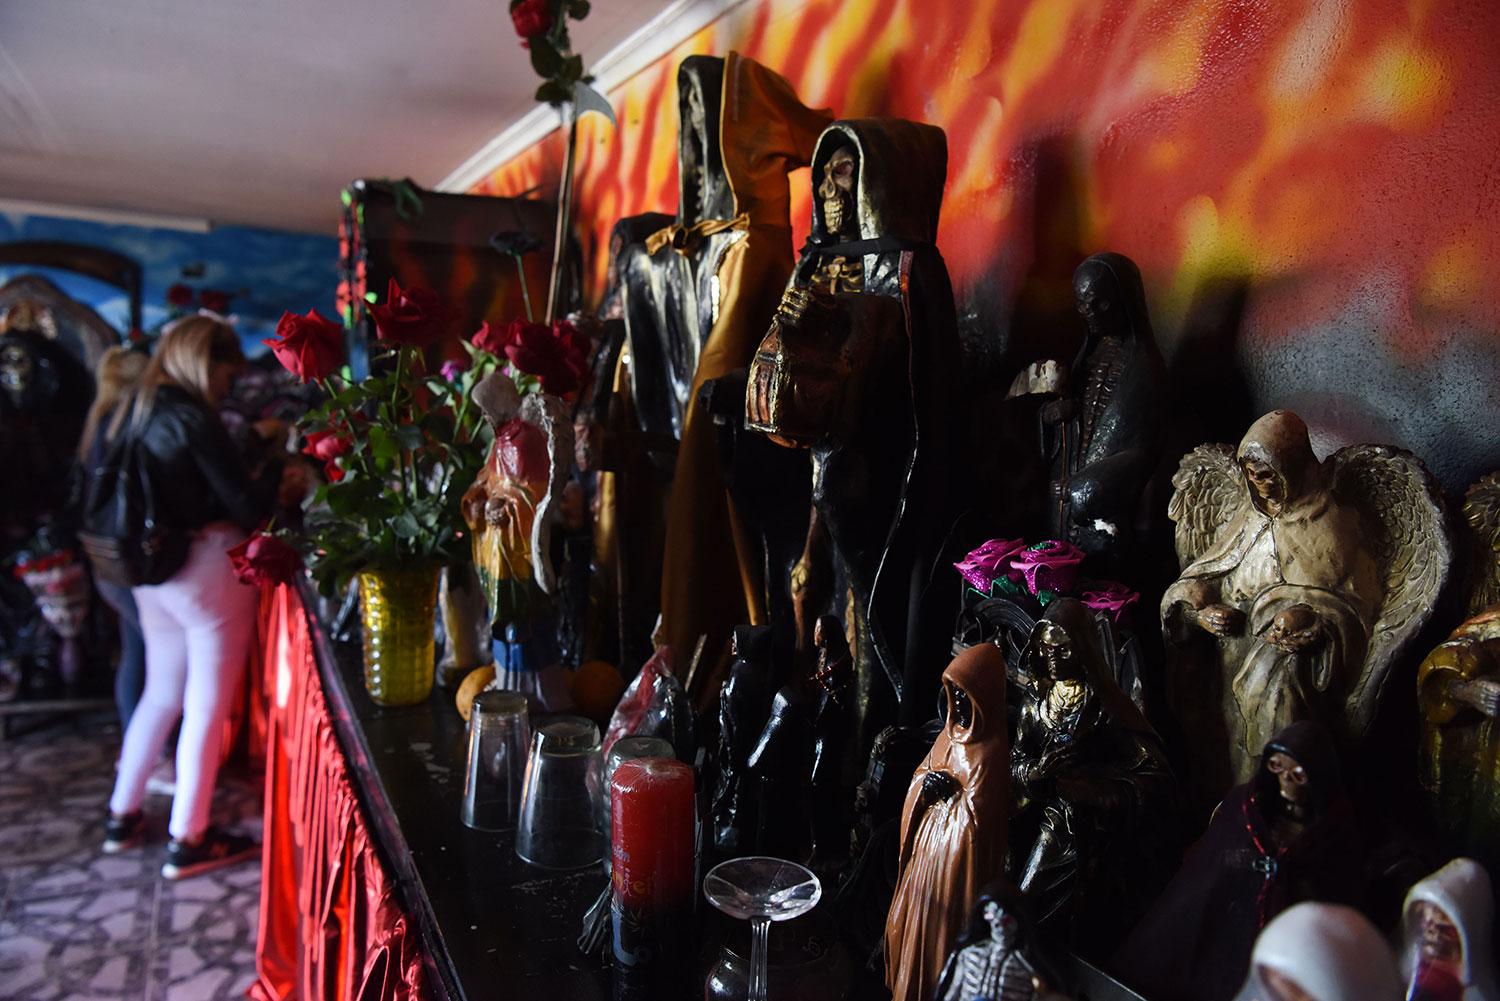 RECUPERADAS. Las imágenes donadas de San La Muerte fueron reconstruidas. Una noche le predieron fuego al lugar. LA GACETA / DIEGO ARÁOZ